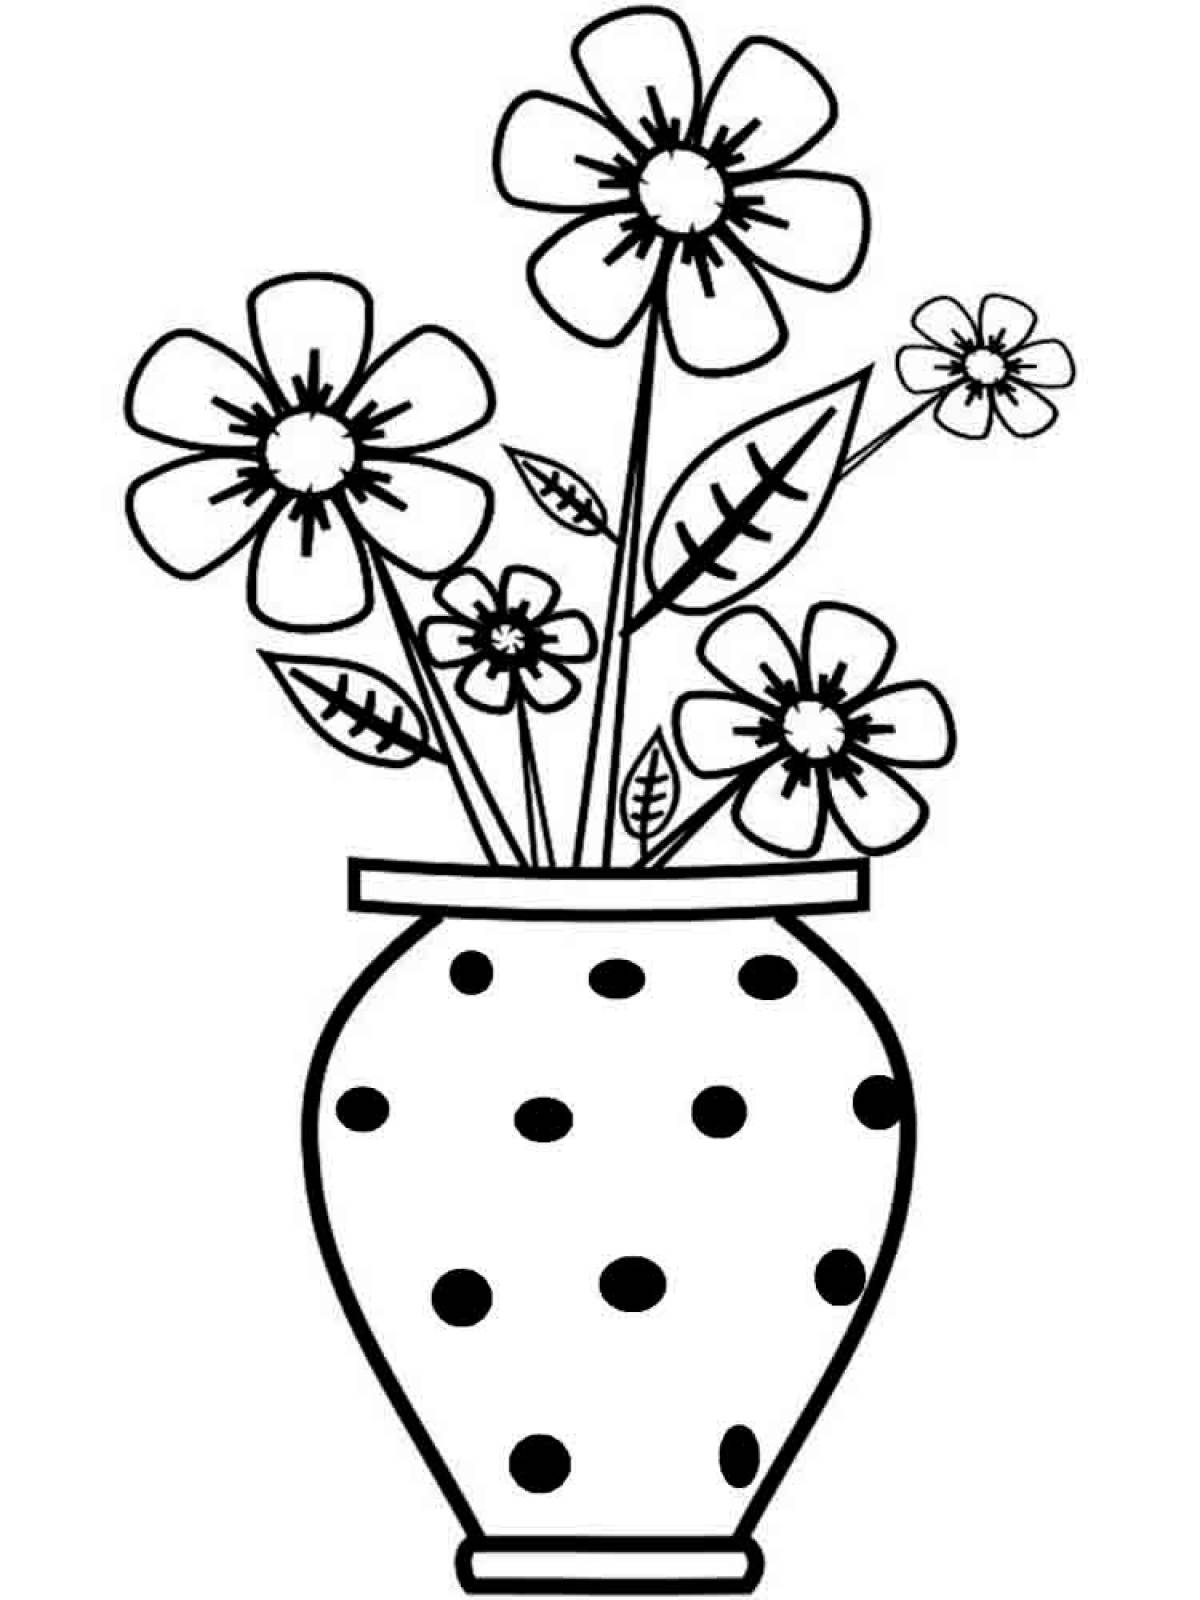 Vase with peas